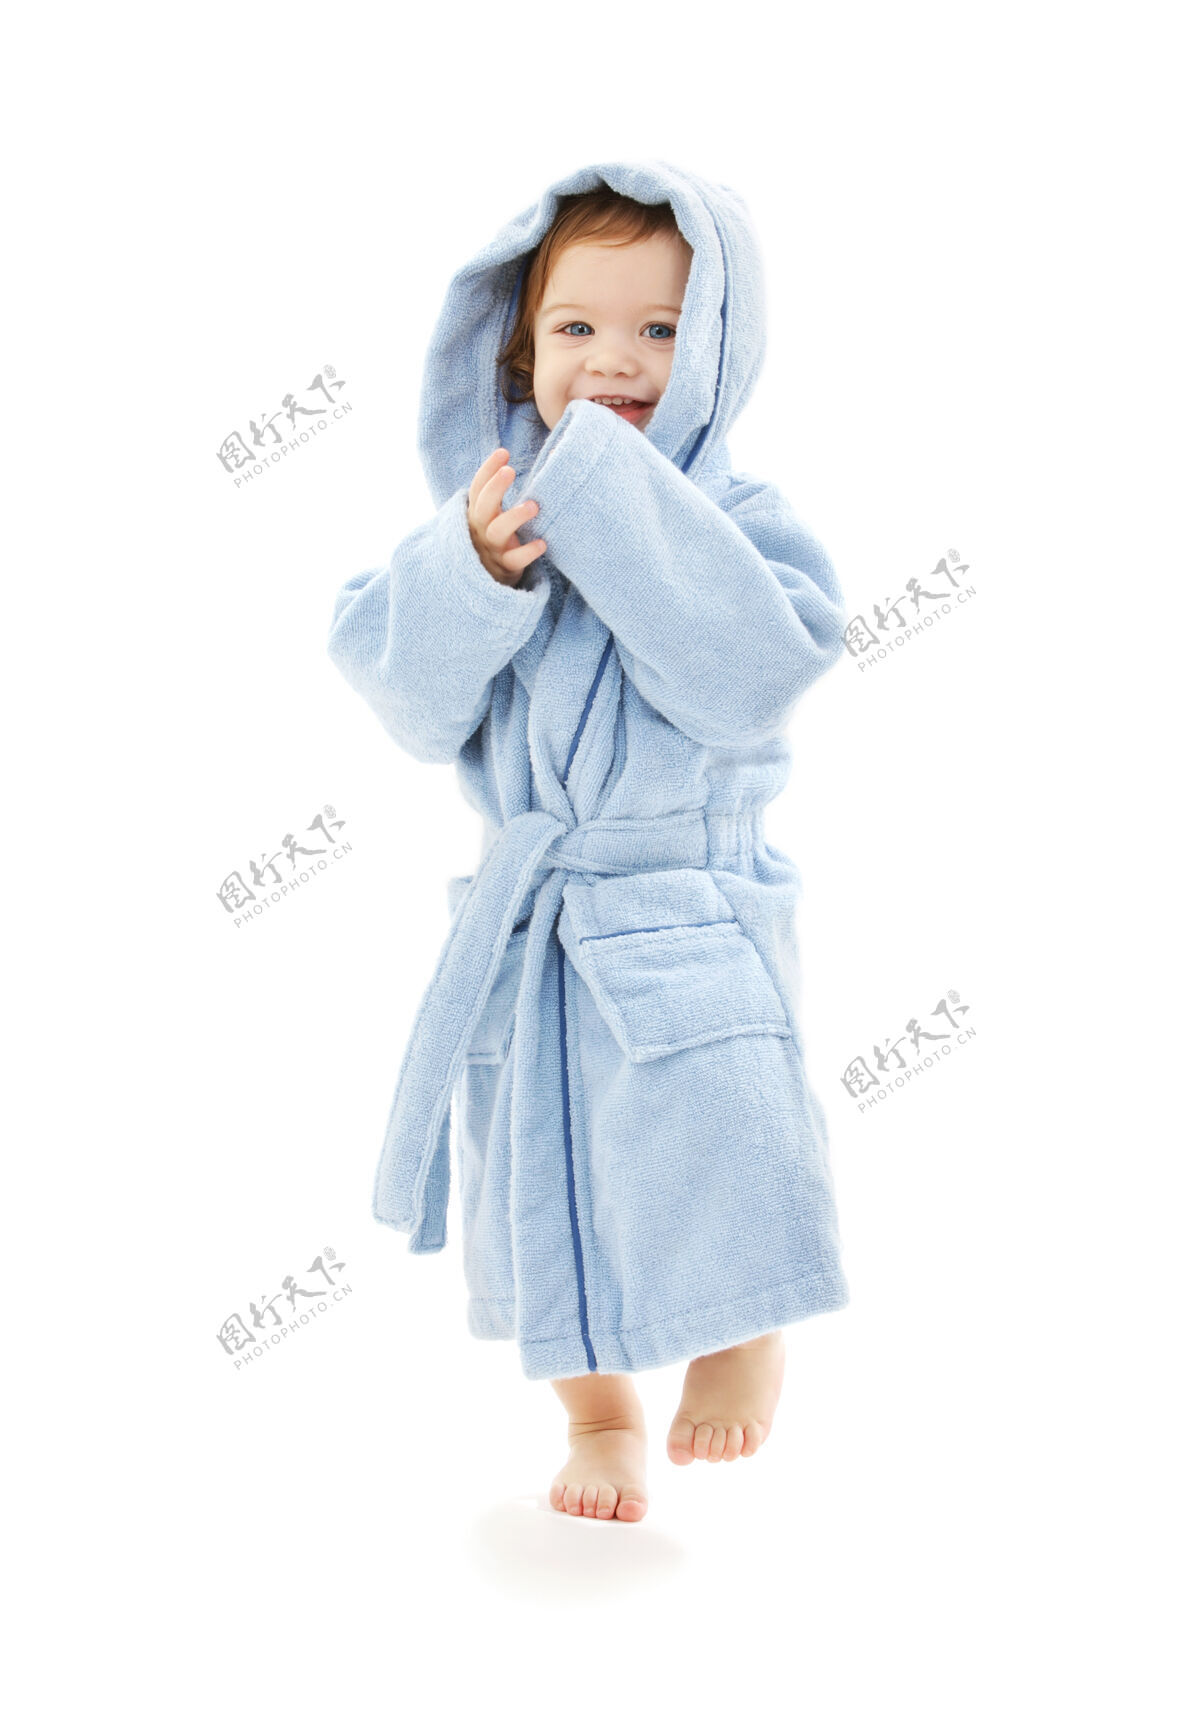 托儿穿蓝袍白袍的男婴生活婴儿长袍